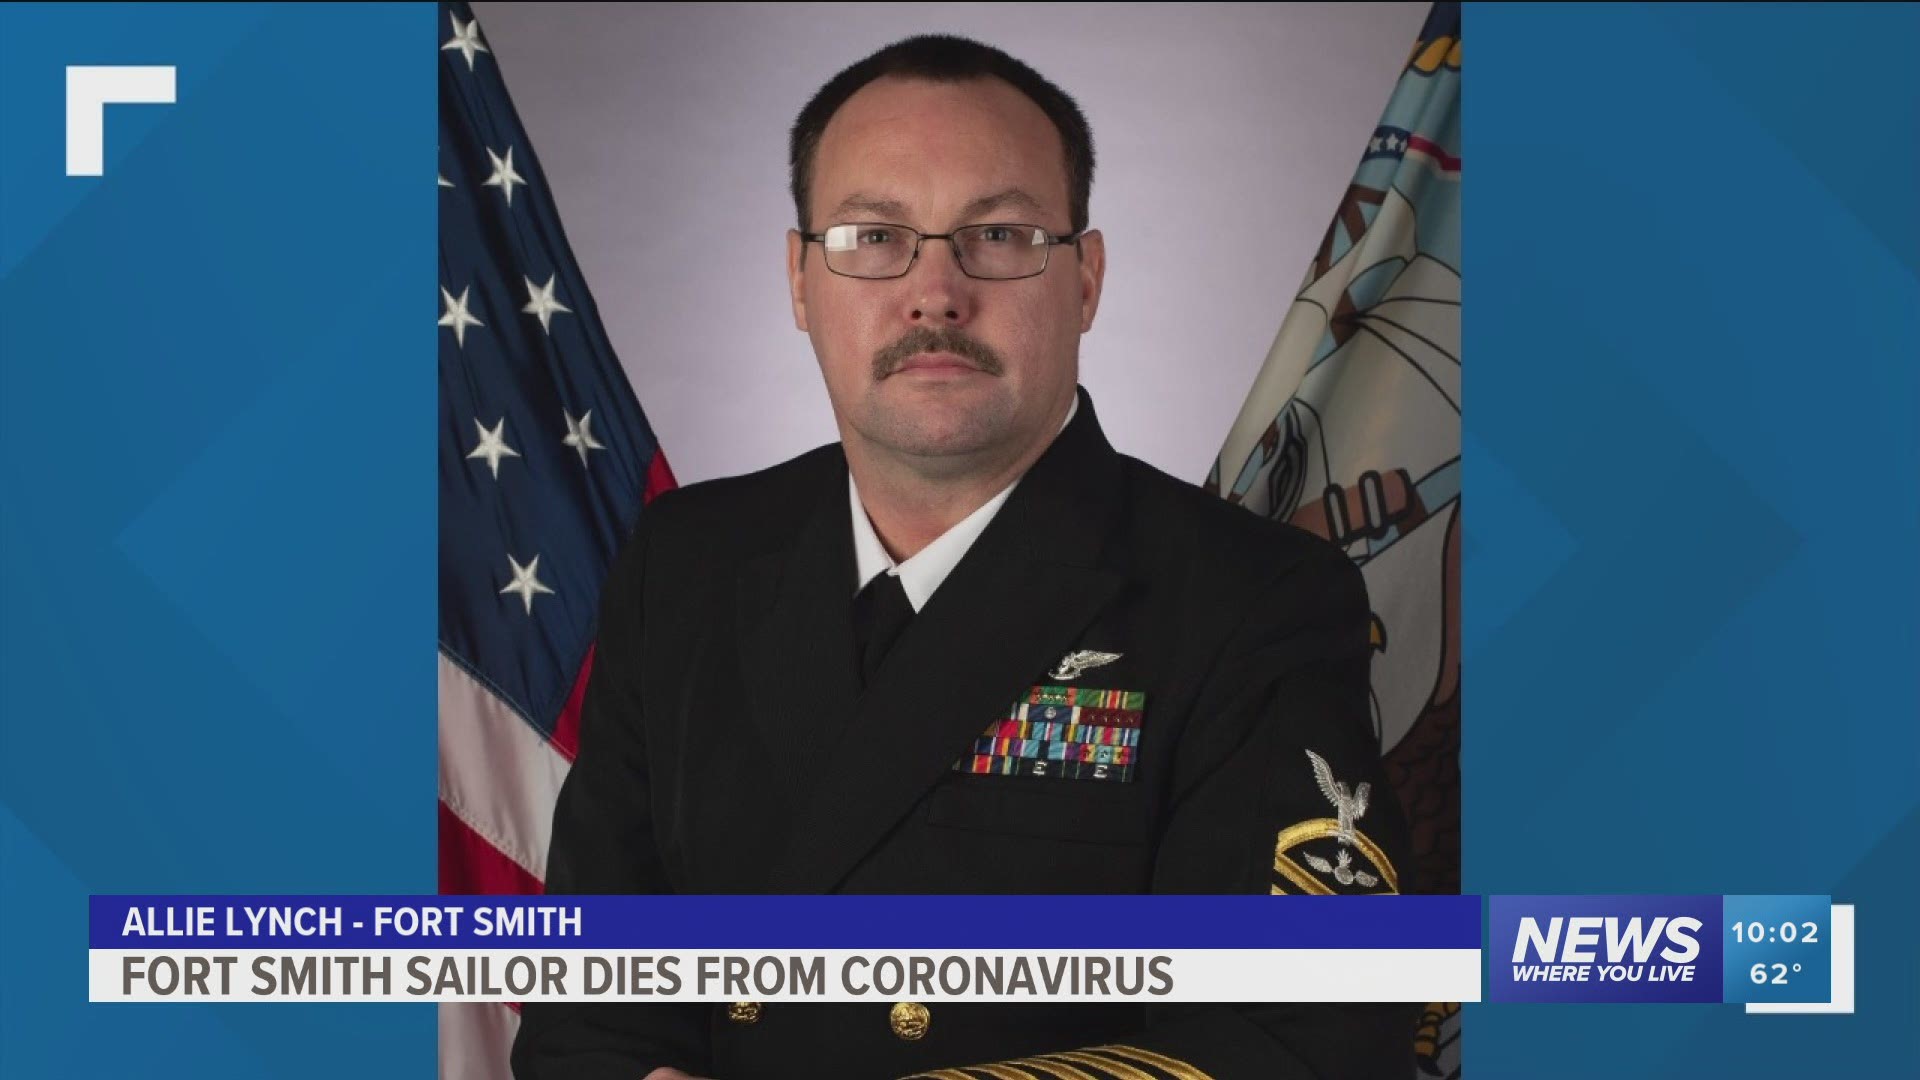 Fort Smith Sailor dies from coronavirus